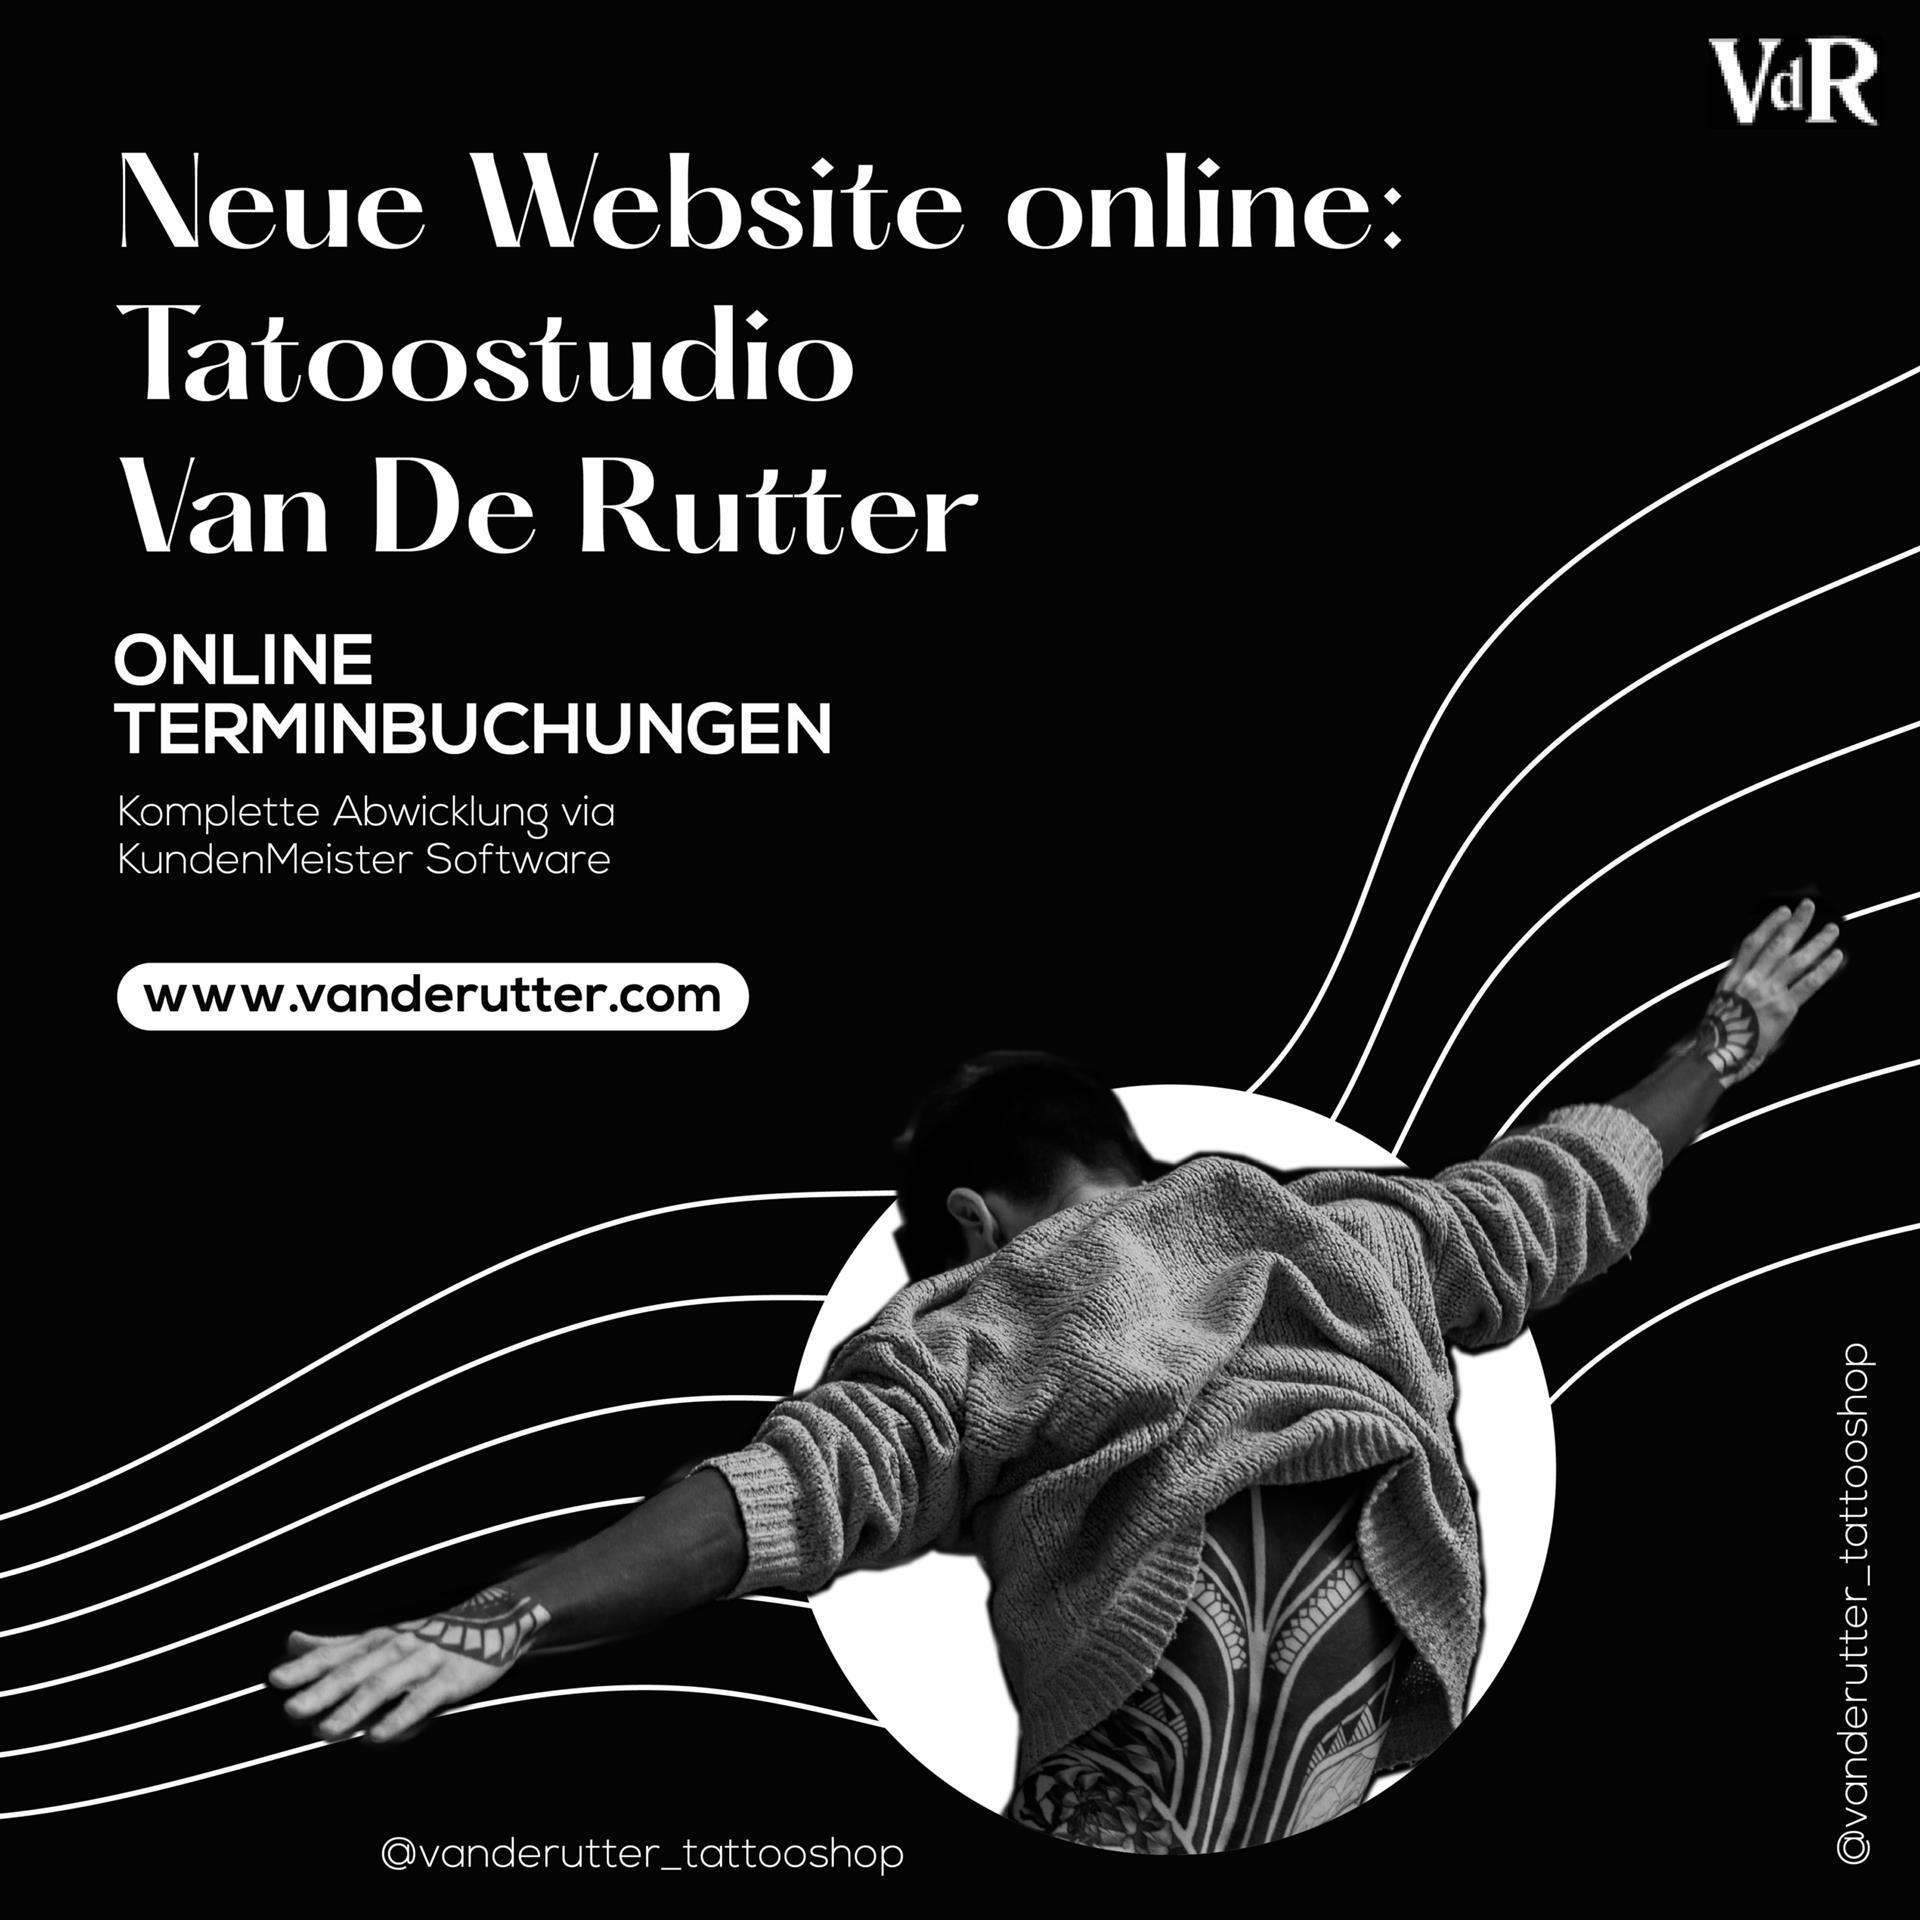 Nuevo sitio web para Van de Rutter